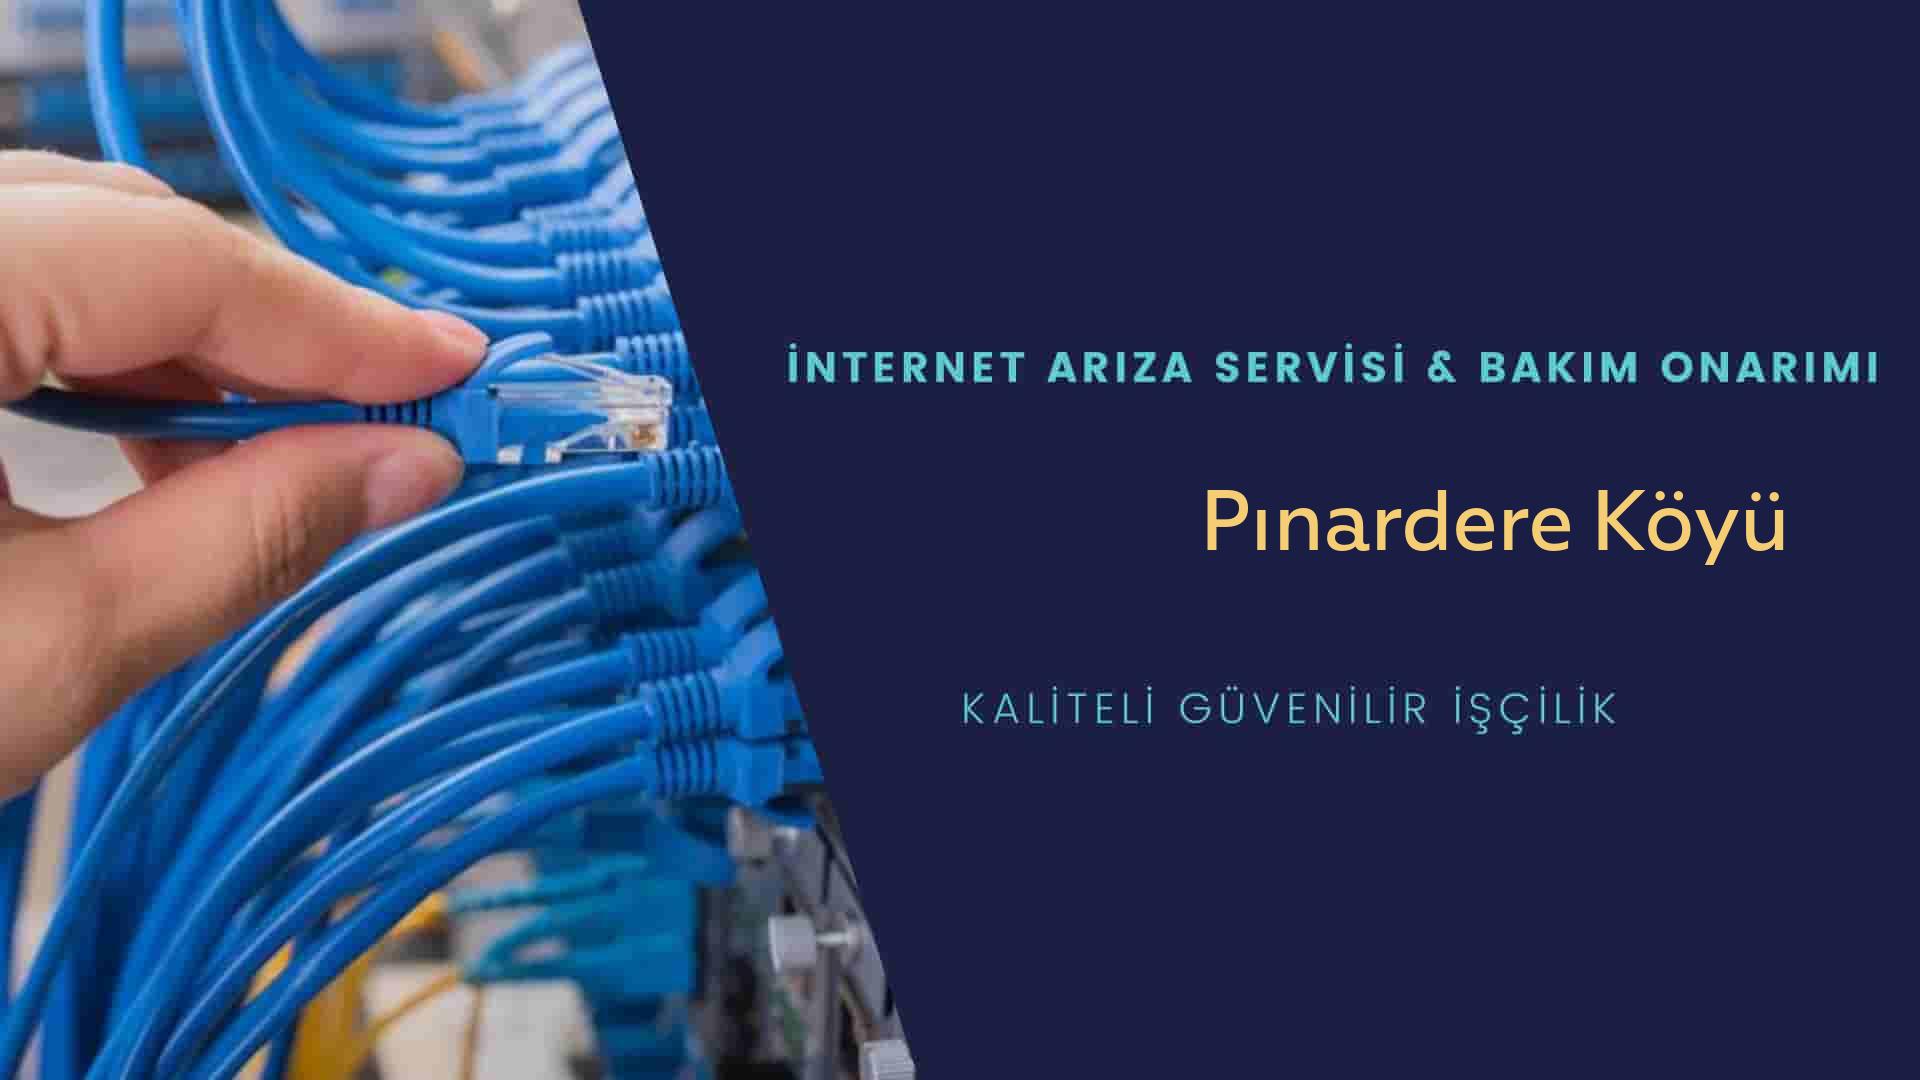 Pınardere Köyü internet kablosu çekimi yapan yerler veya elektrikçiler mi? arıyorsunuz doğru yerdesiniz o zaman sizlere 7/24 yardımcı olacak profesyonel ustalarımız bir telefon kadar yakındır size.